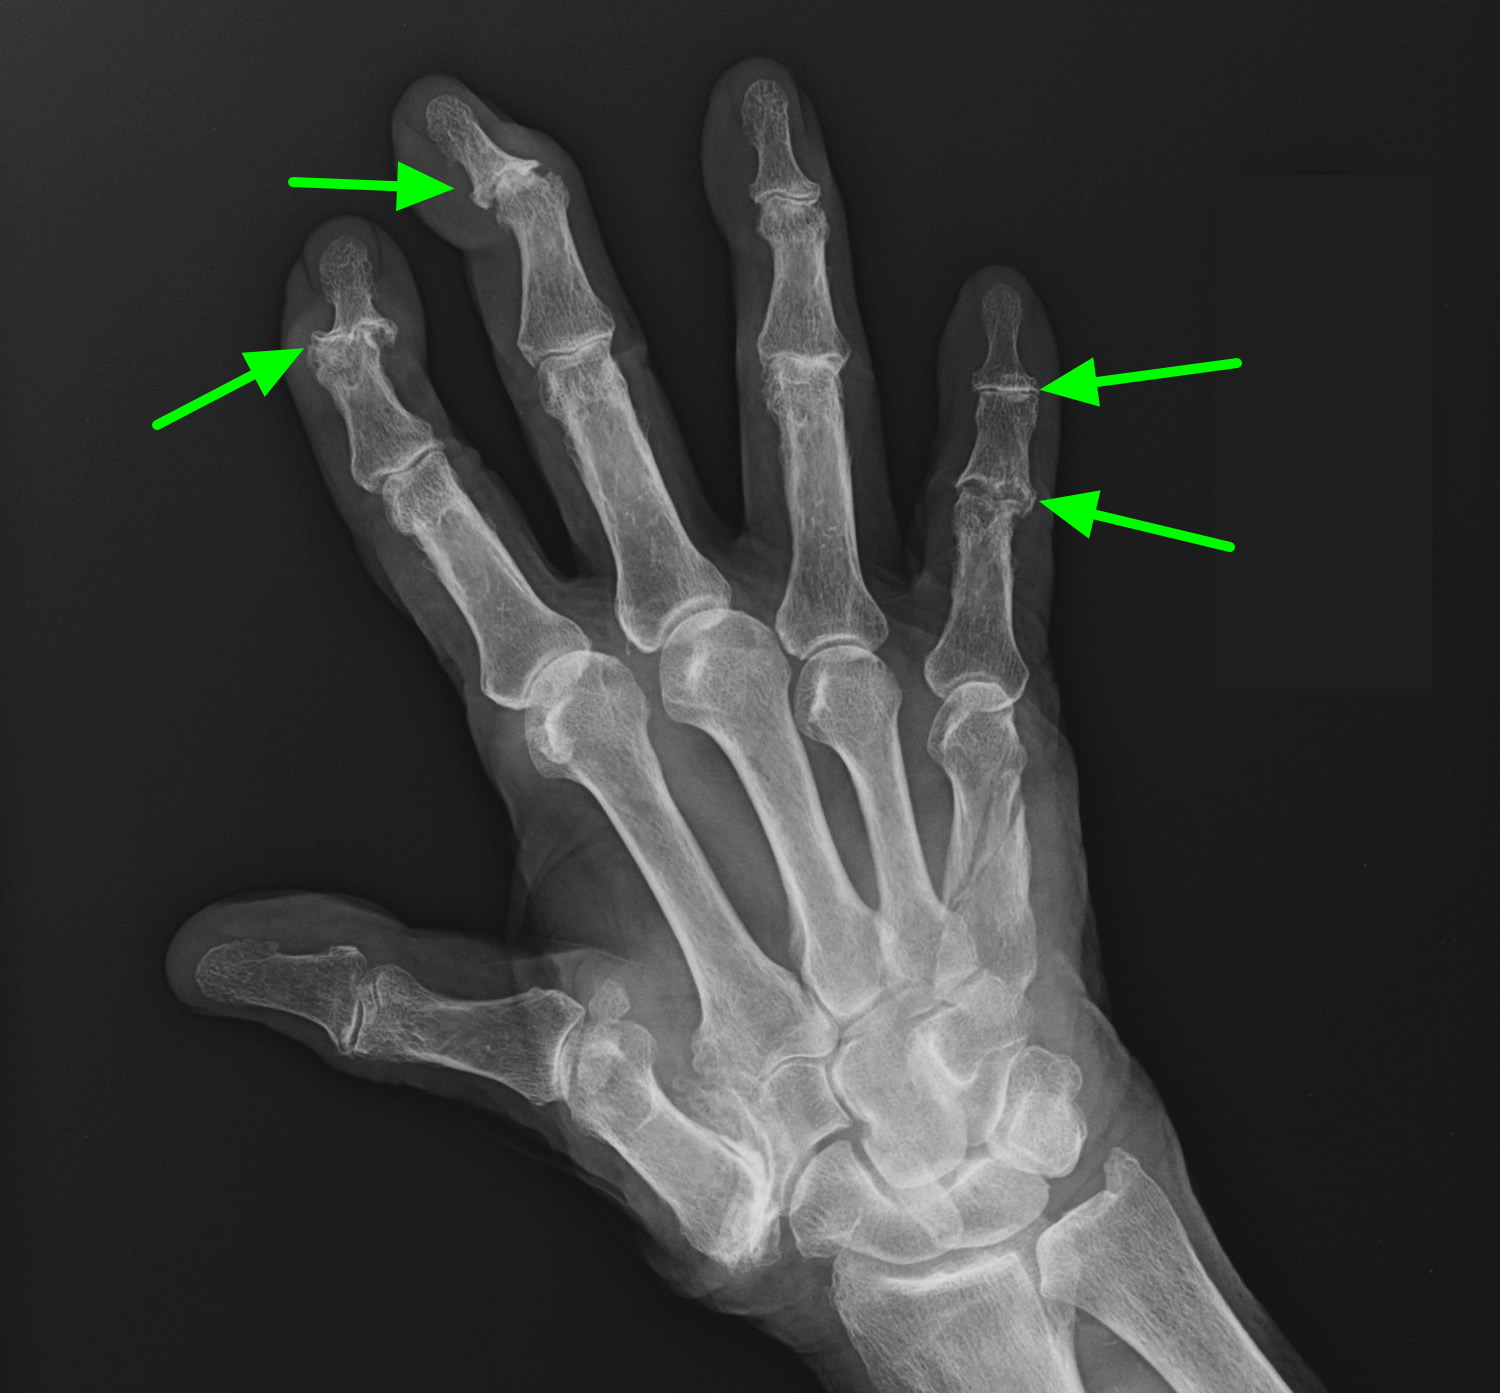 Ревматоидный артрит суставов кистей. Ревматоидный артрит кисти рентген. Ревматоидный артрит лучезапястного сустава рентген. Периостит пальца кисти рентген. Деформирующий остеоартроз кисти рентген.